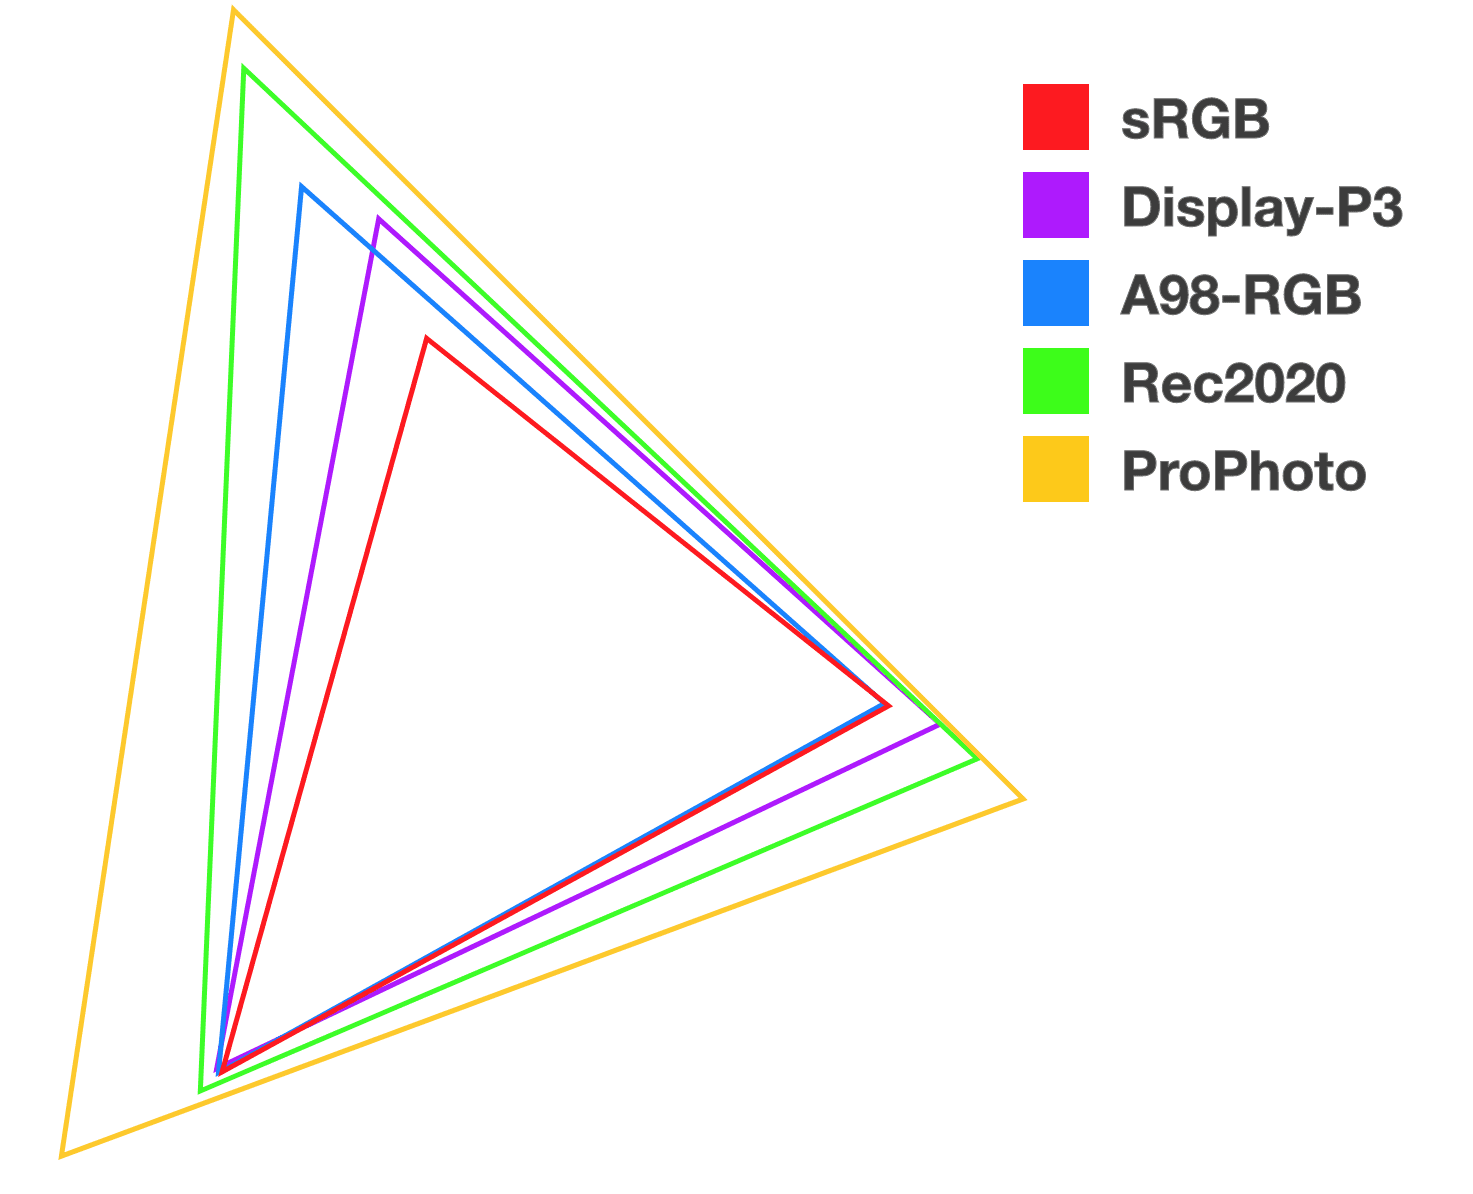 5 tam giác xếp chồng có màu khác nhau để giúp minh hoạ mối quan hệ và kích thước của mỗi hệ màu mới.